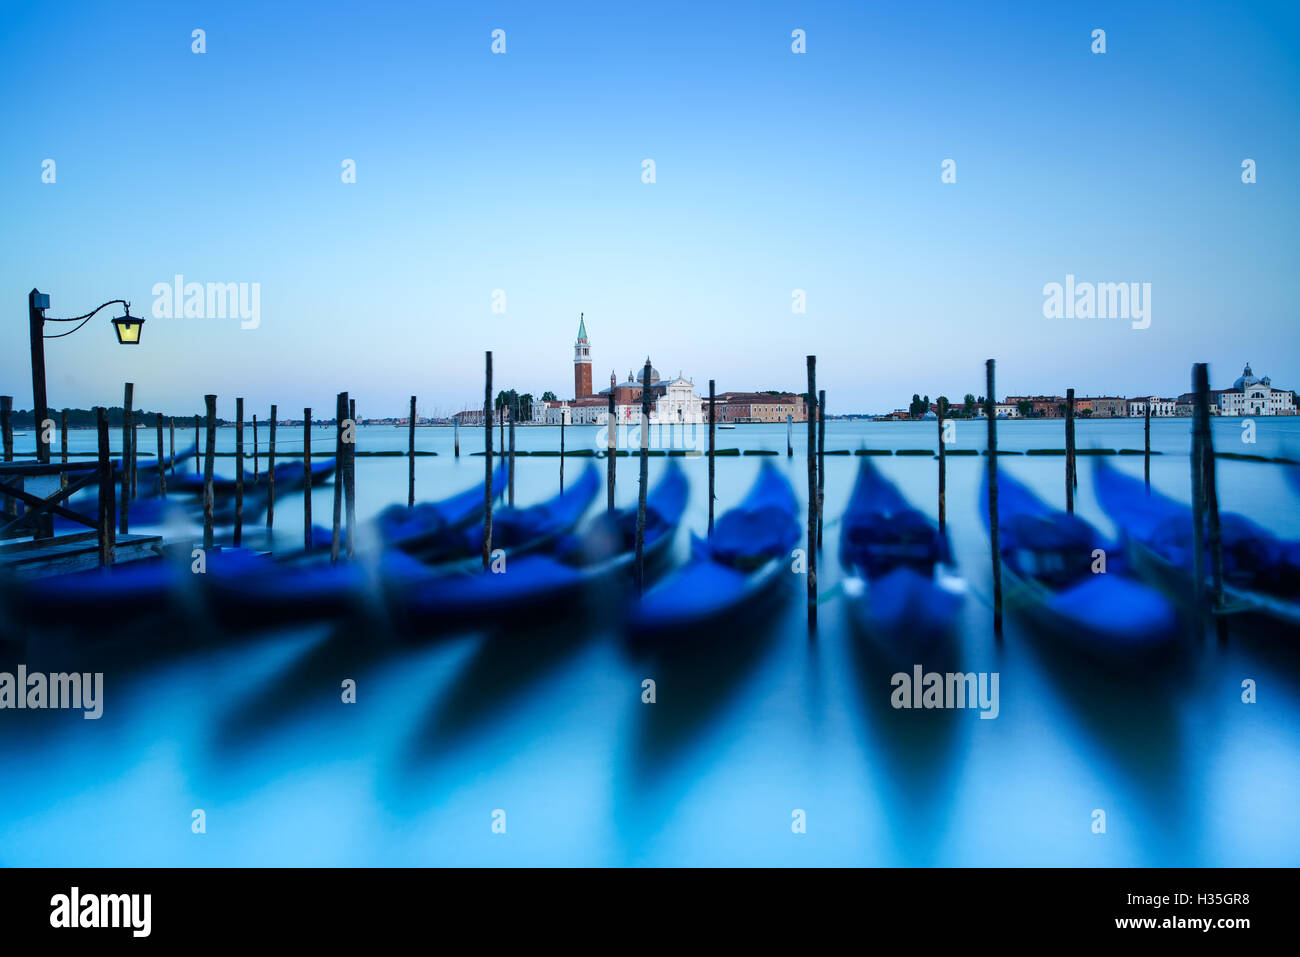 Venise, gondoles ou gondole sur un coucher de soleil bleu crépuscule et église San Giorgio Maggiore vue sur arrière-plan. L'Italie, l'Europe. Banque D'Images